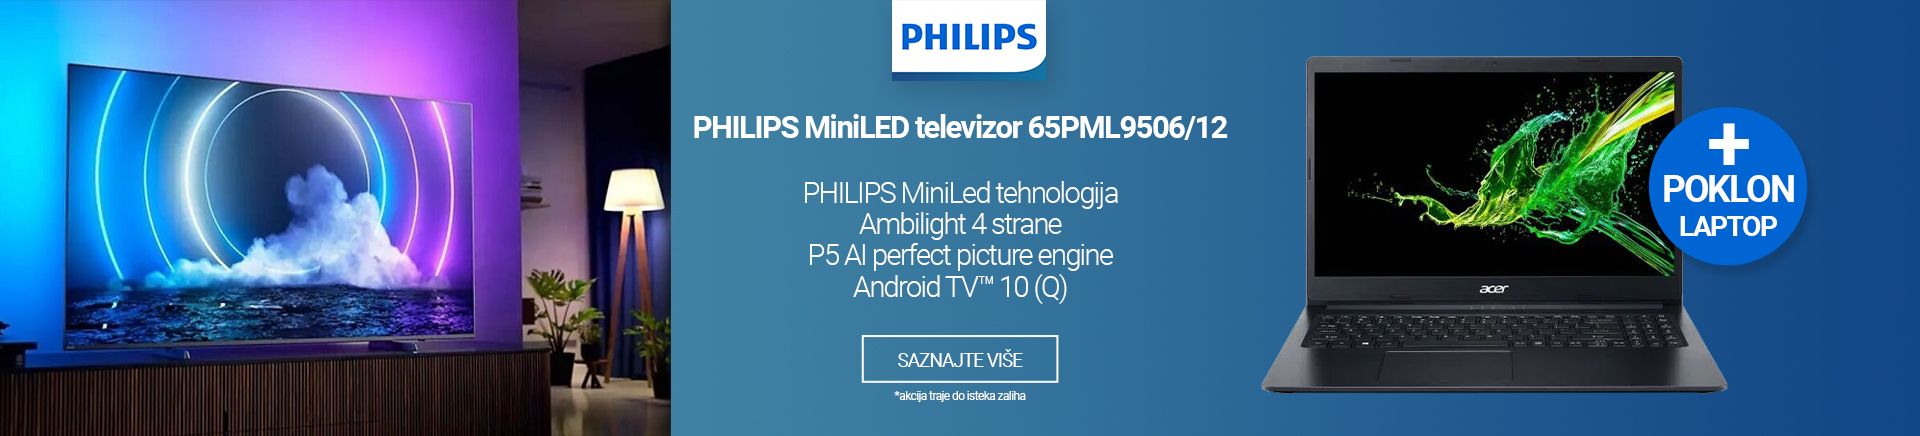 BiH PHILIPS MiniLED televizor 65PML950612 MOBILE 380 X 436.jpg